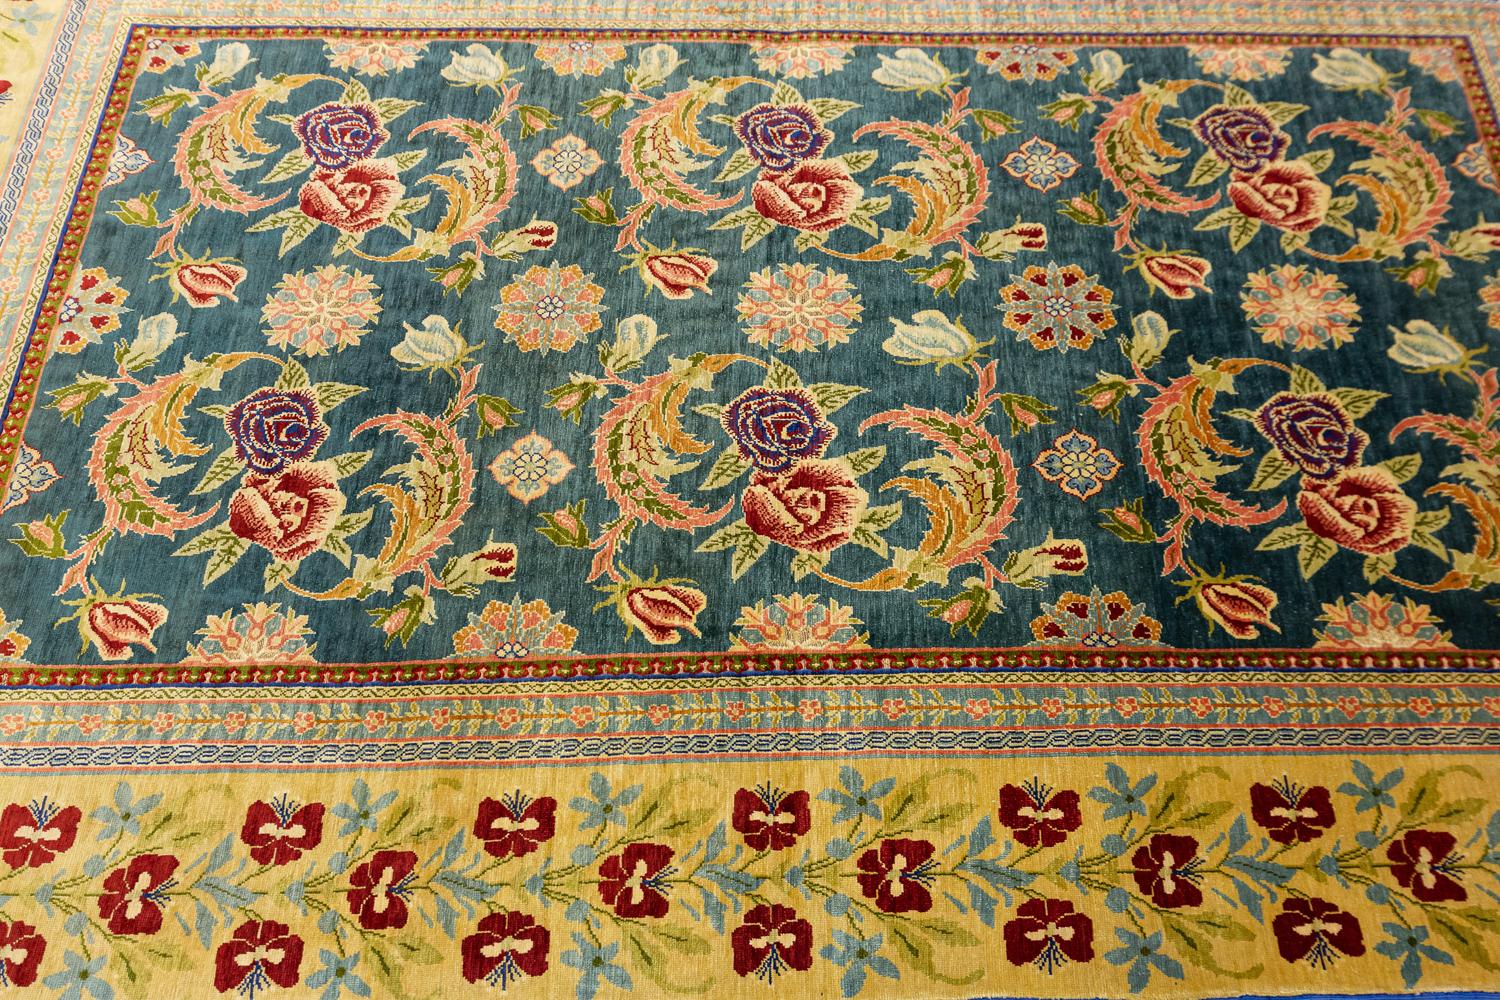 Dieser Hereke-Teppich mit Seiden- und Metallfäden wurde um 1950-1970 in der Türkei gewebt und ist 147 x 87 cm groß. Es hat ein florales Allover-Muster mit zwei Säulen aus blühenden Rosenmotiven auf grünem Hintergrund. Die Umrandung ist mit